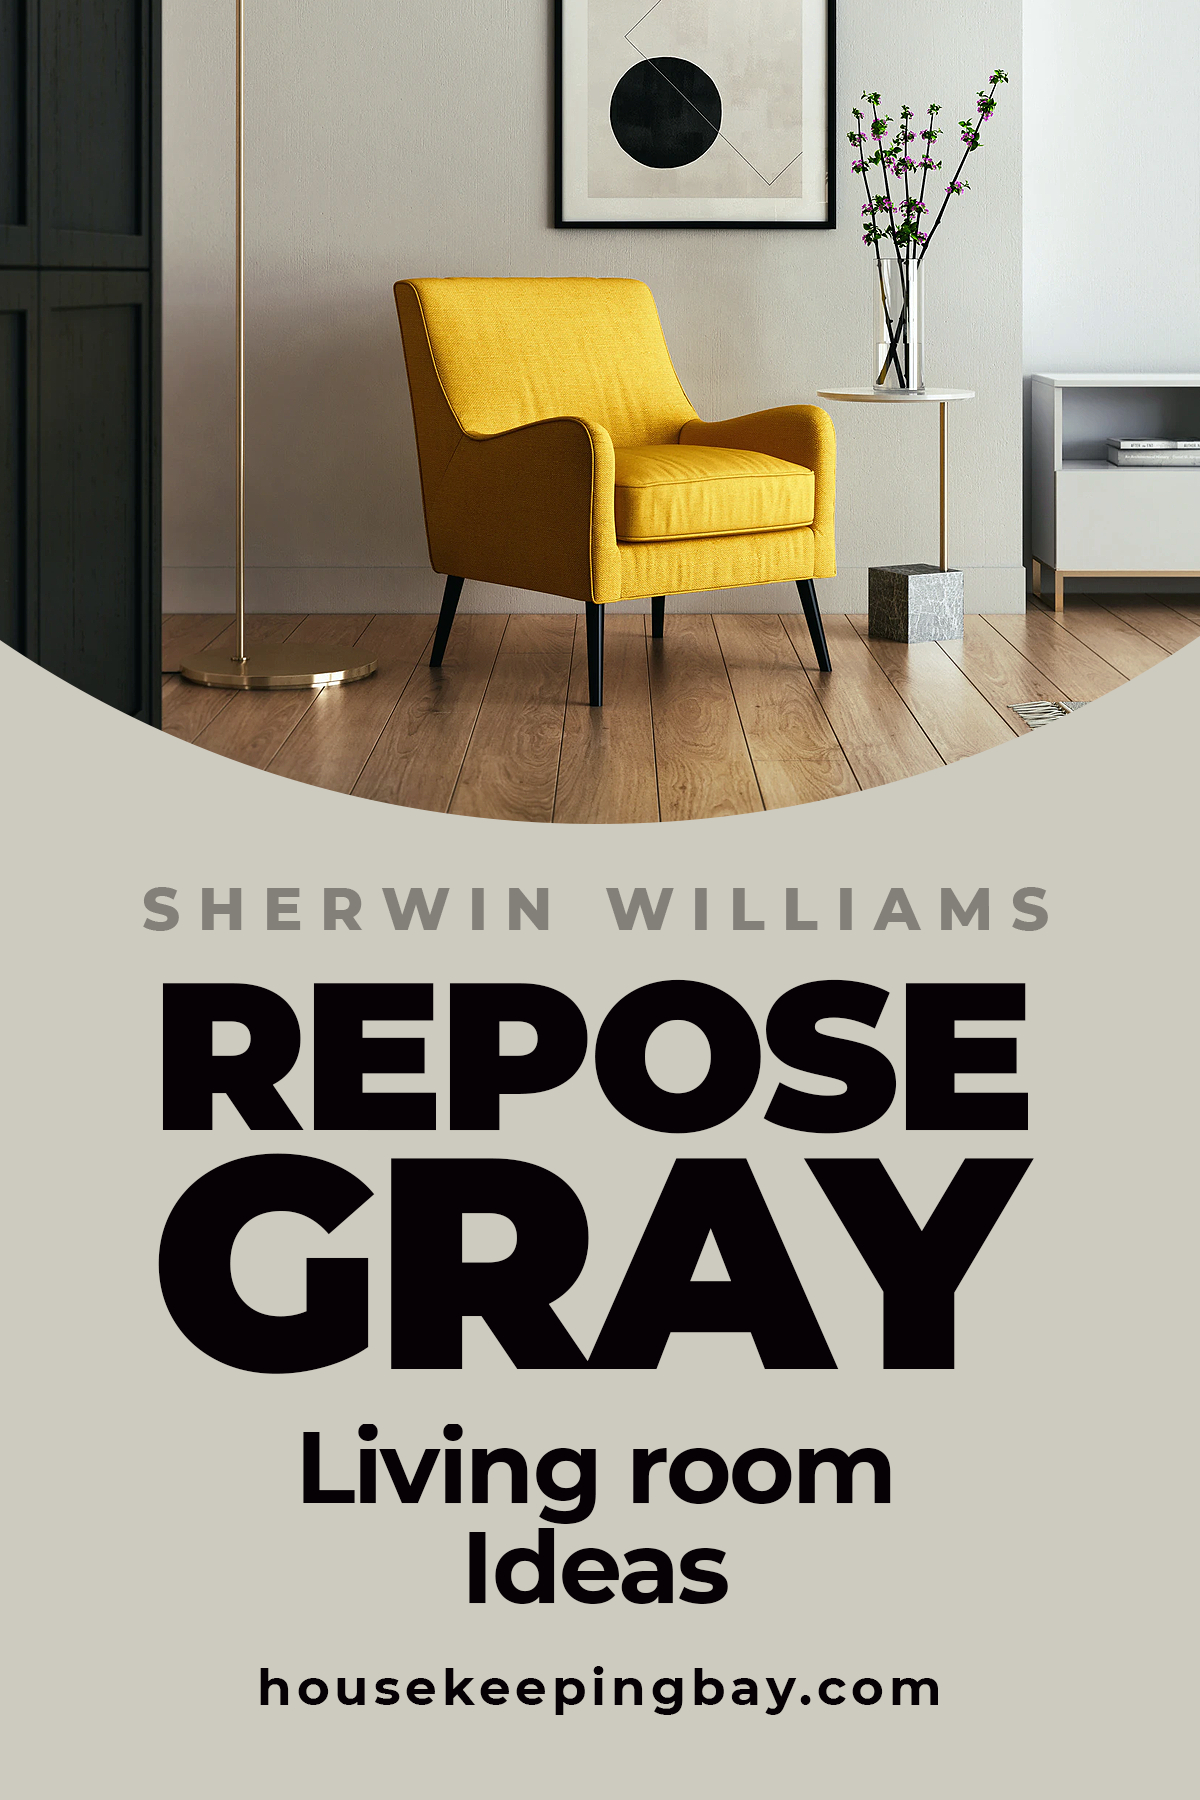 Repose Gray Living room Ideas